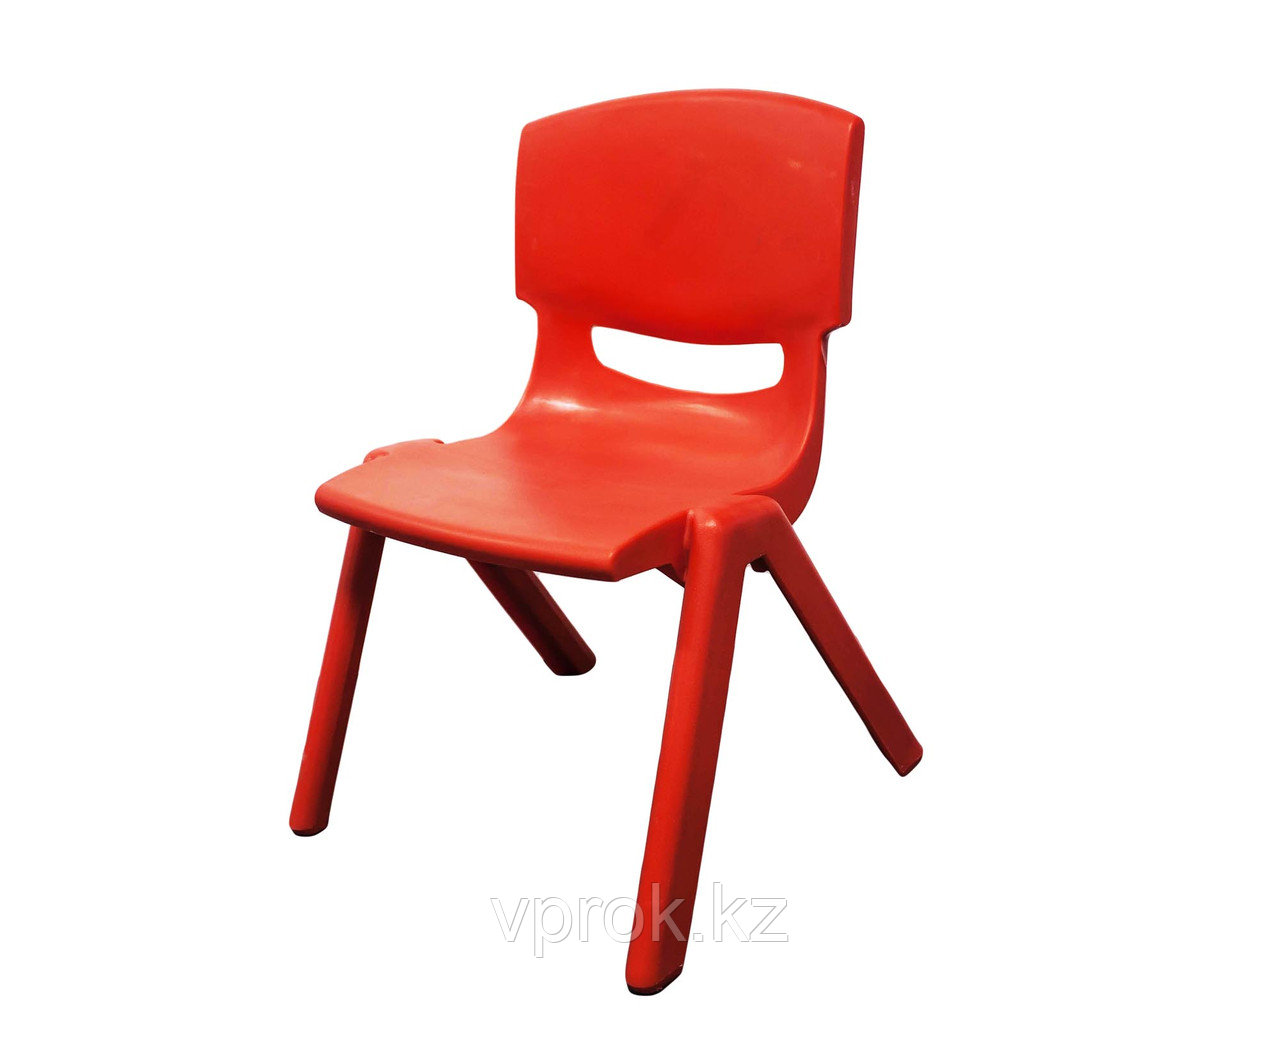 Стульчик детский пластиковый высота сиденья 24 см, красный